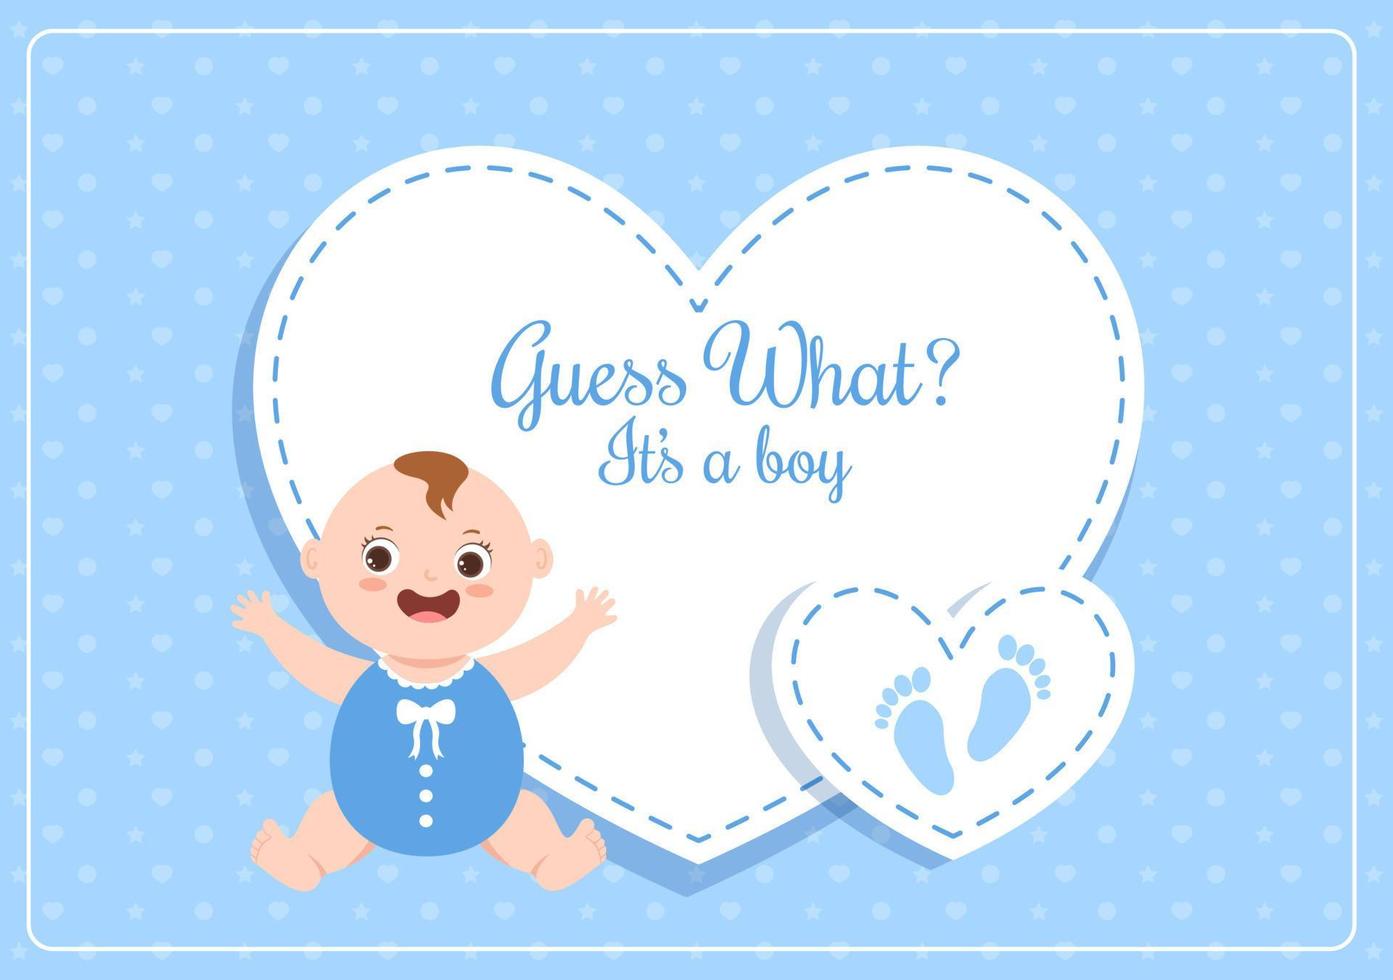 födelsefoto är det en pojke med en babybild och blå bakgrundsillustration för gratulationskort eller skylt vektor